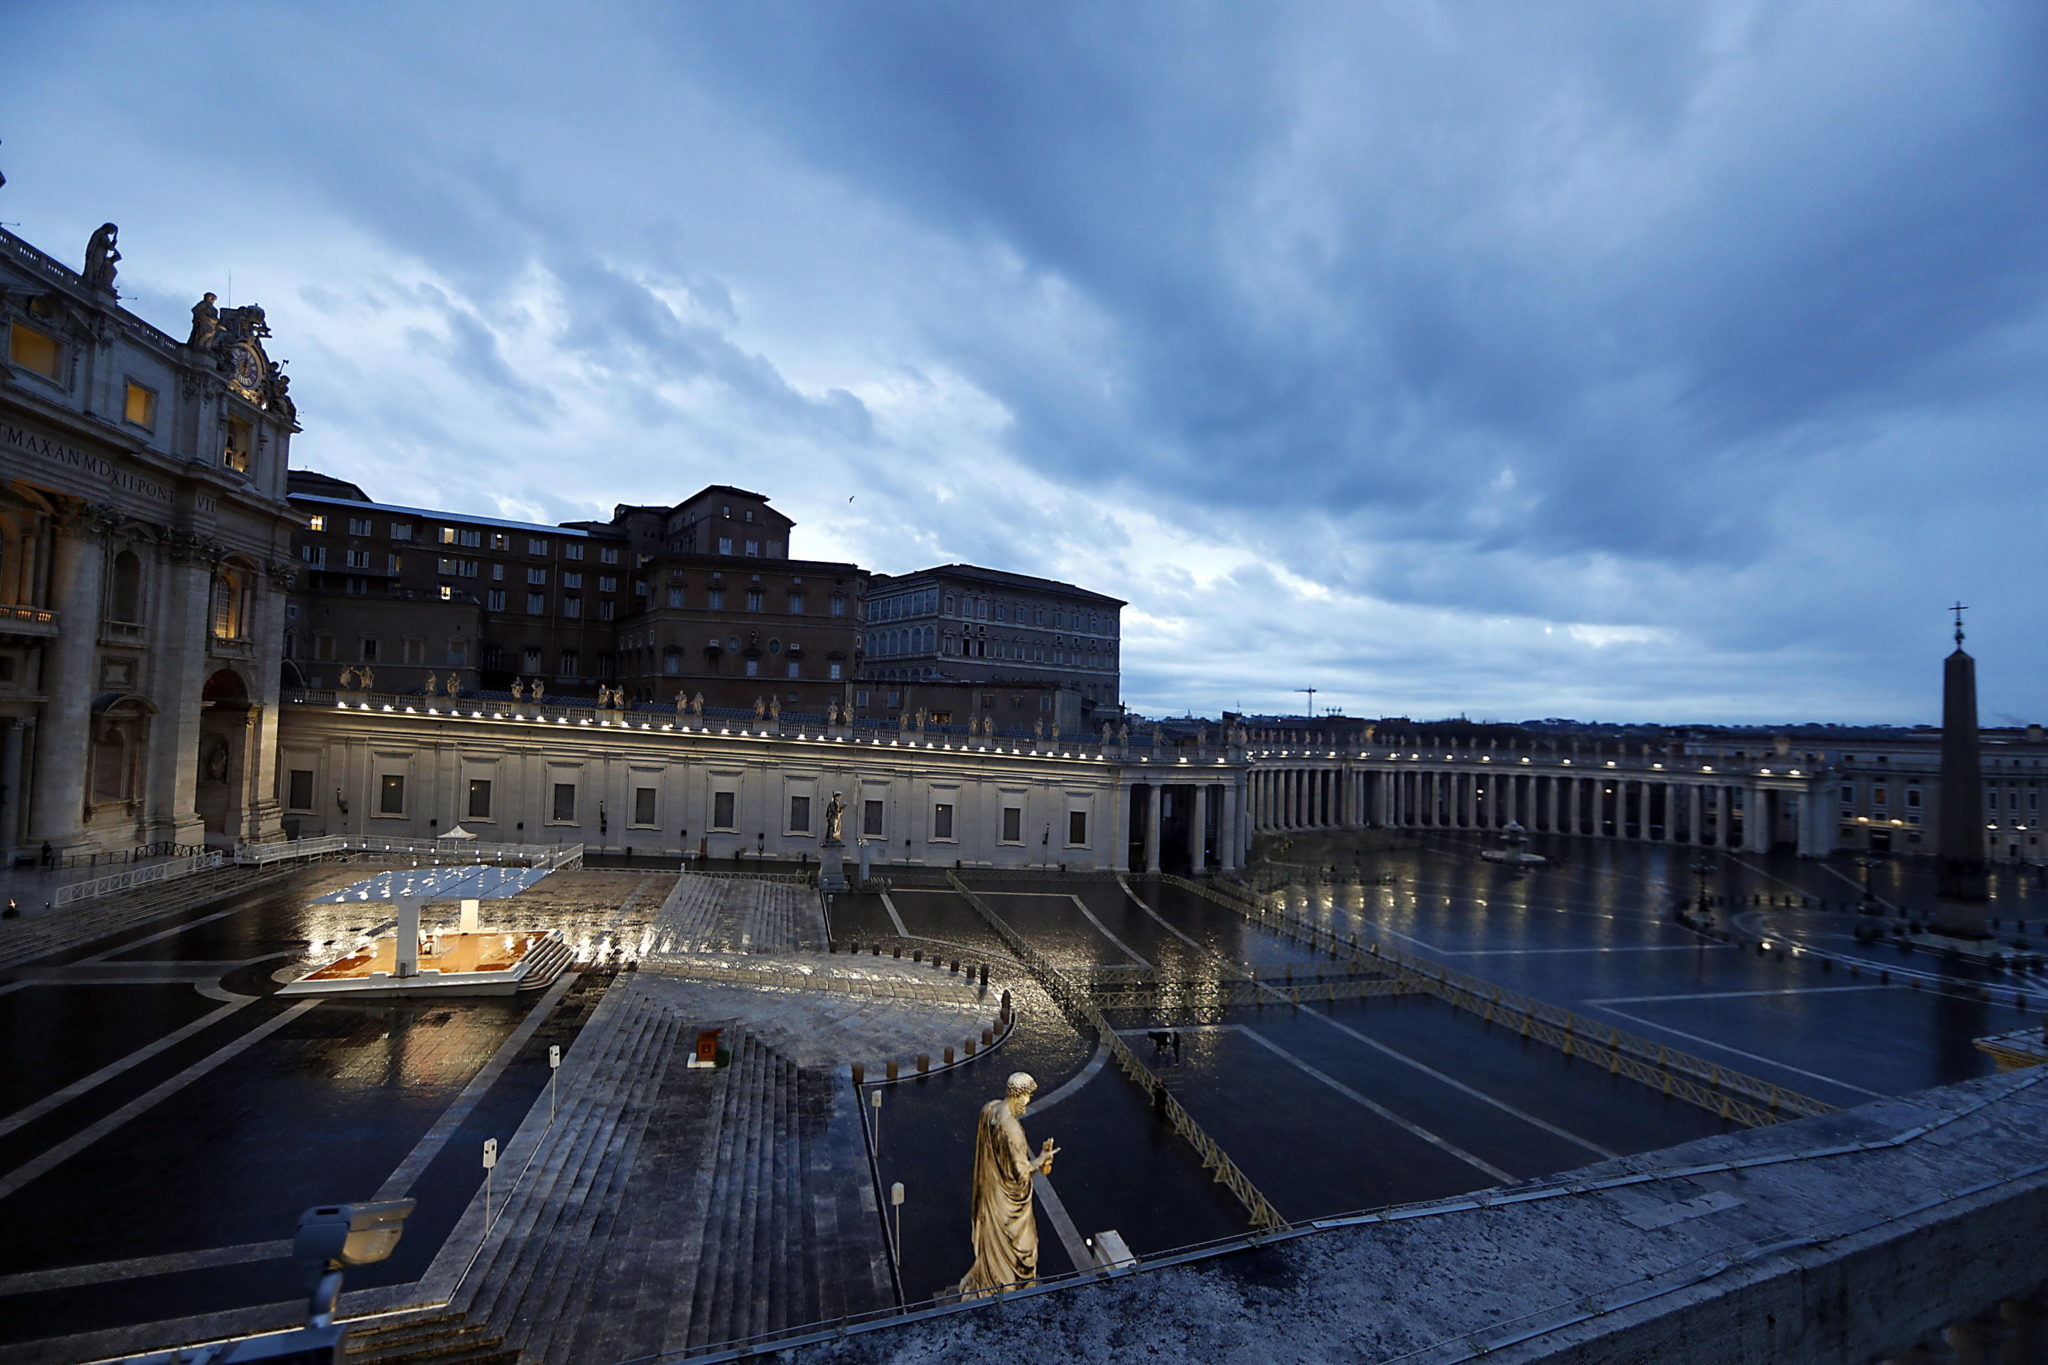 przejmujący widok pustego placu św. piotra w Rzymie. fot. EPA/YARA NARDI / POOL